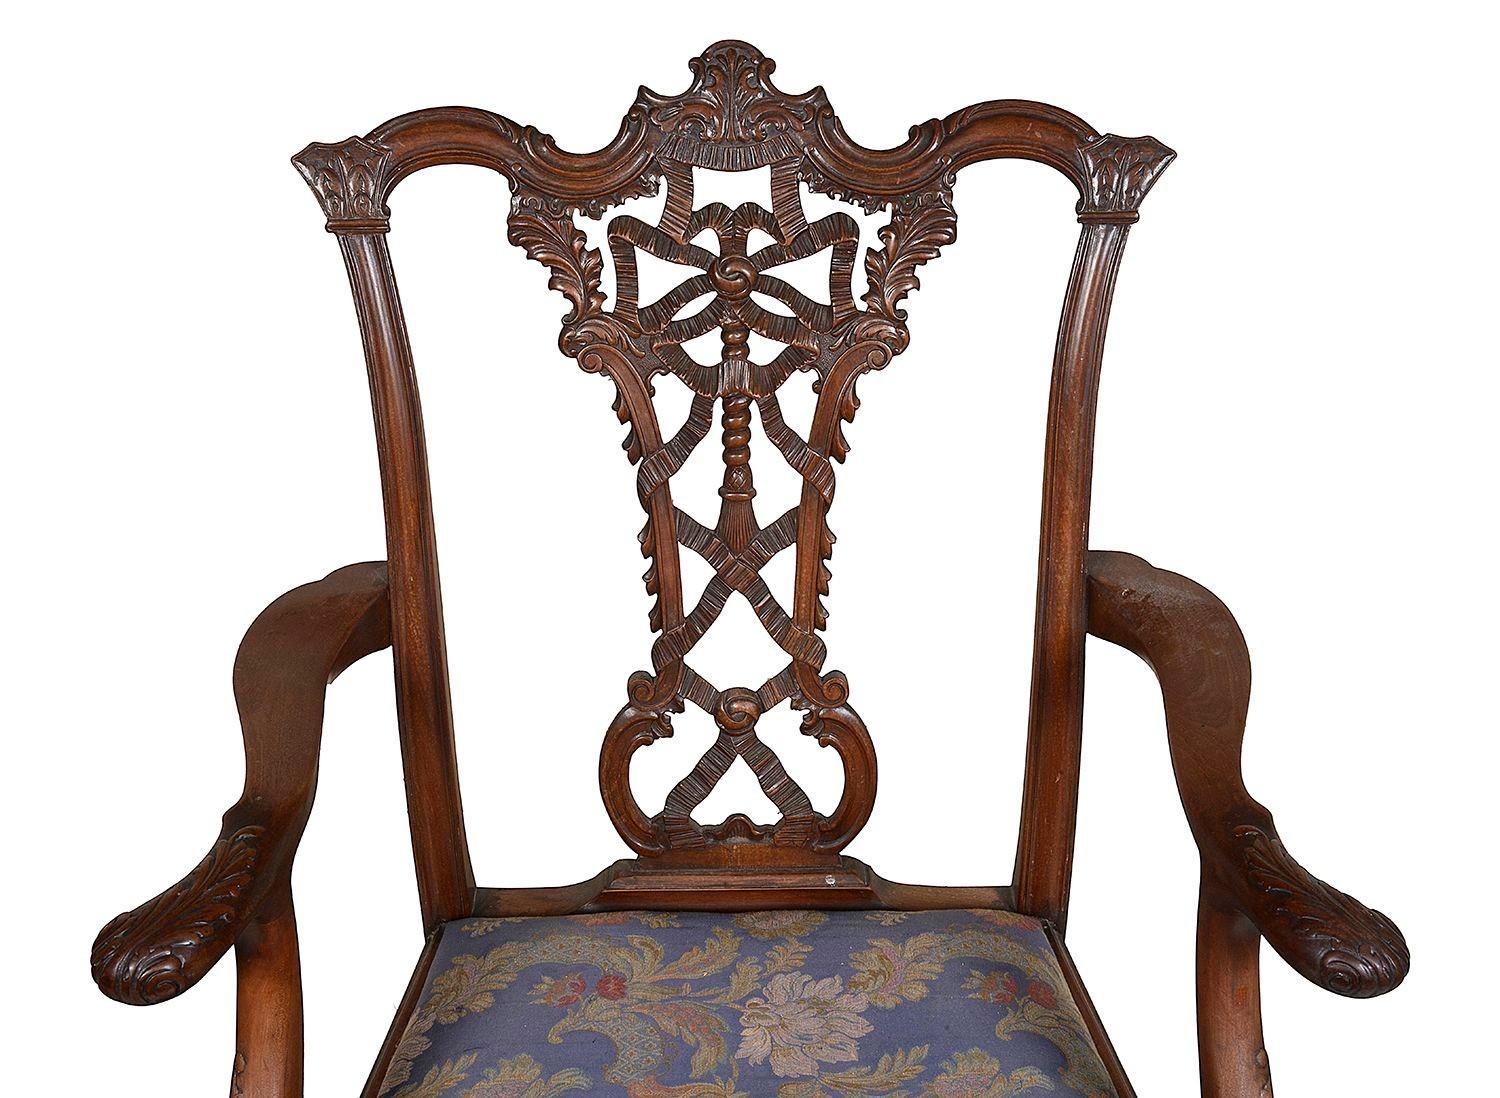 Ein sehr gutes Paar englischer Mahagoni-Sessel im Chippendale-Stil des 19. Jahrhunderts, jeweils mit wundervoller handgeschnitzter Bandrückenverzierung, gepolsterten Sitzen und auf Cabriole-Beinen, die in Kugel- und Krallenfüßen enden.

Charge 76 N/H